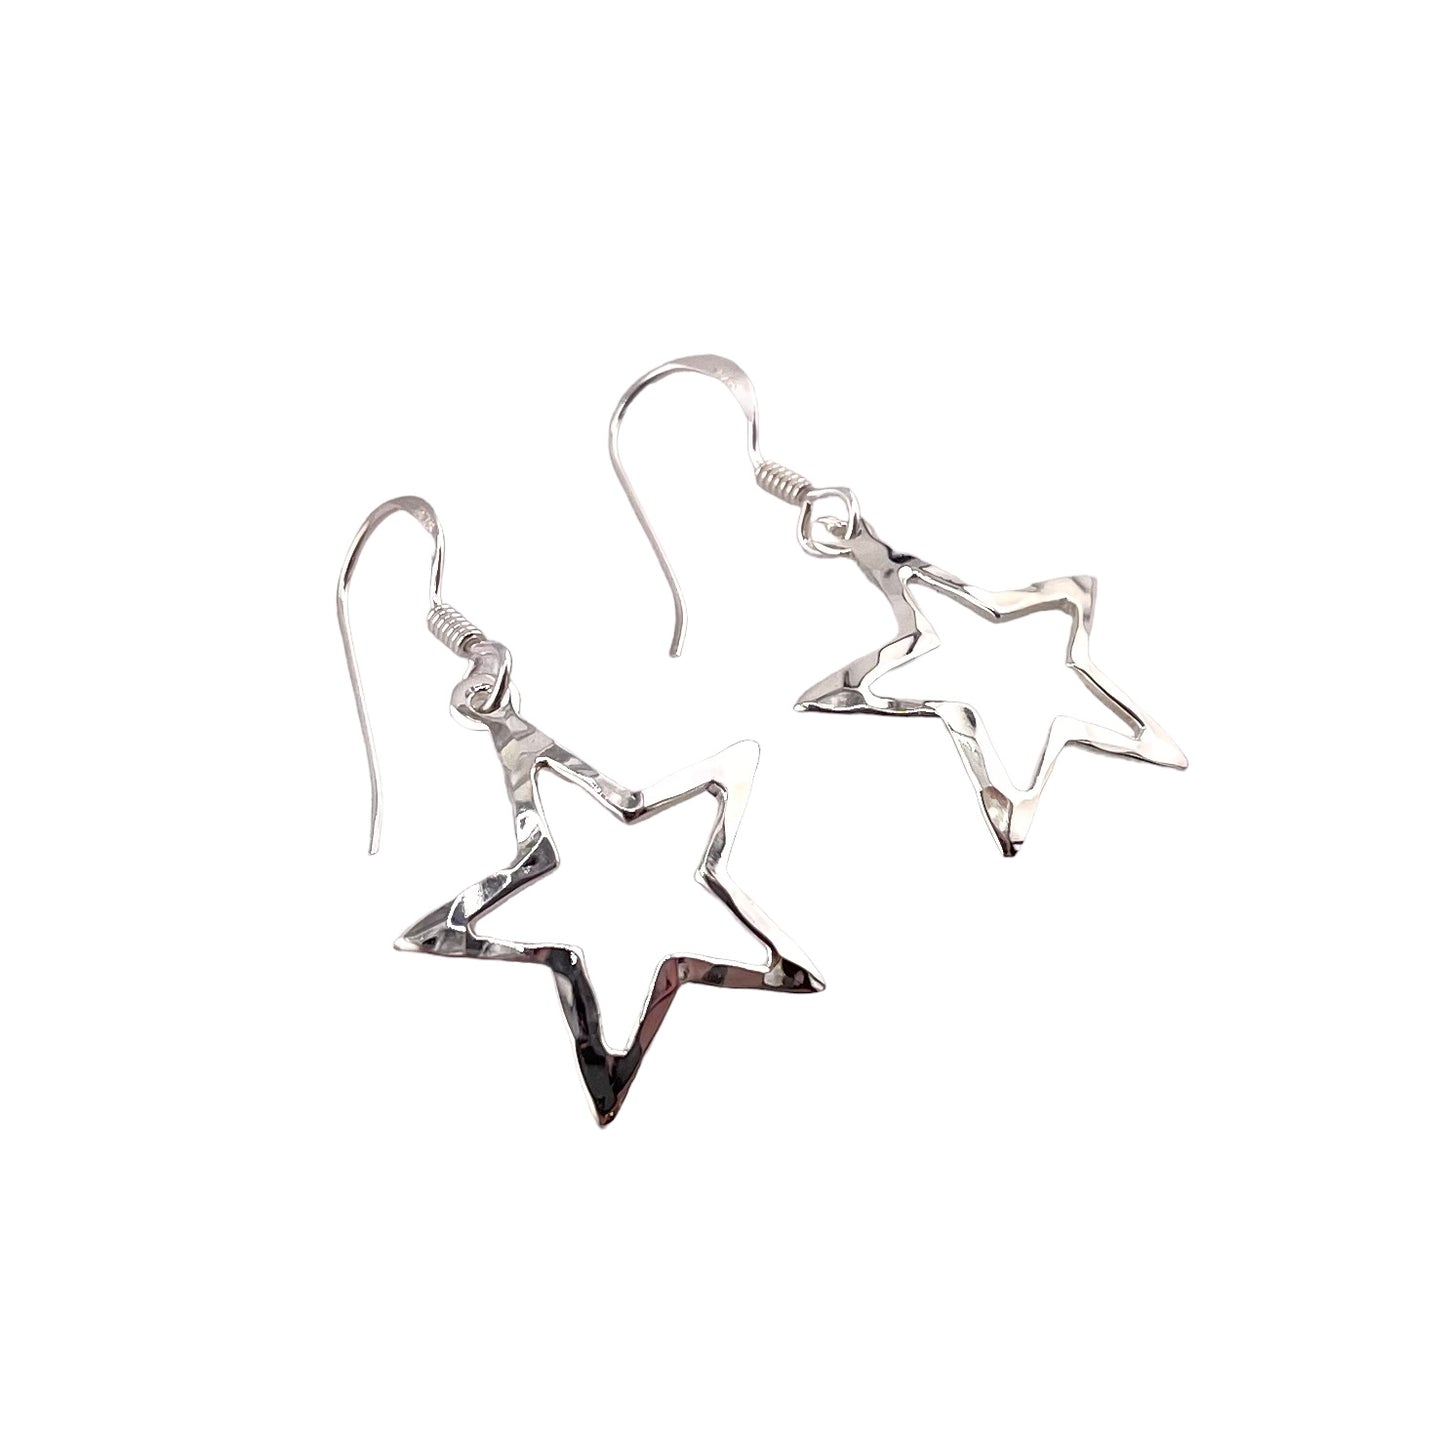 Star Dangle Earrings Sterling Silver